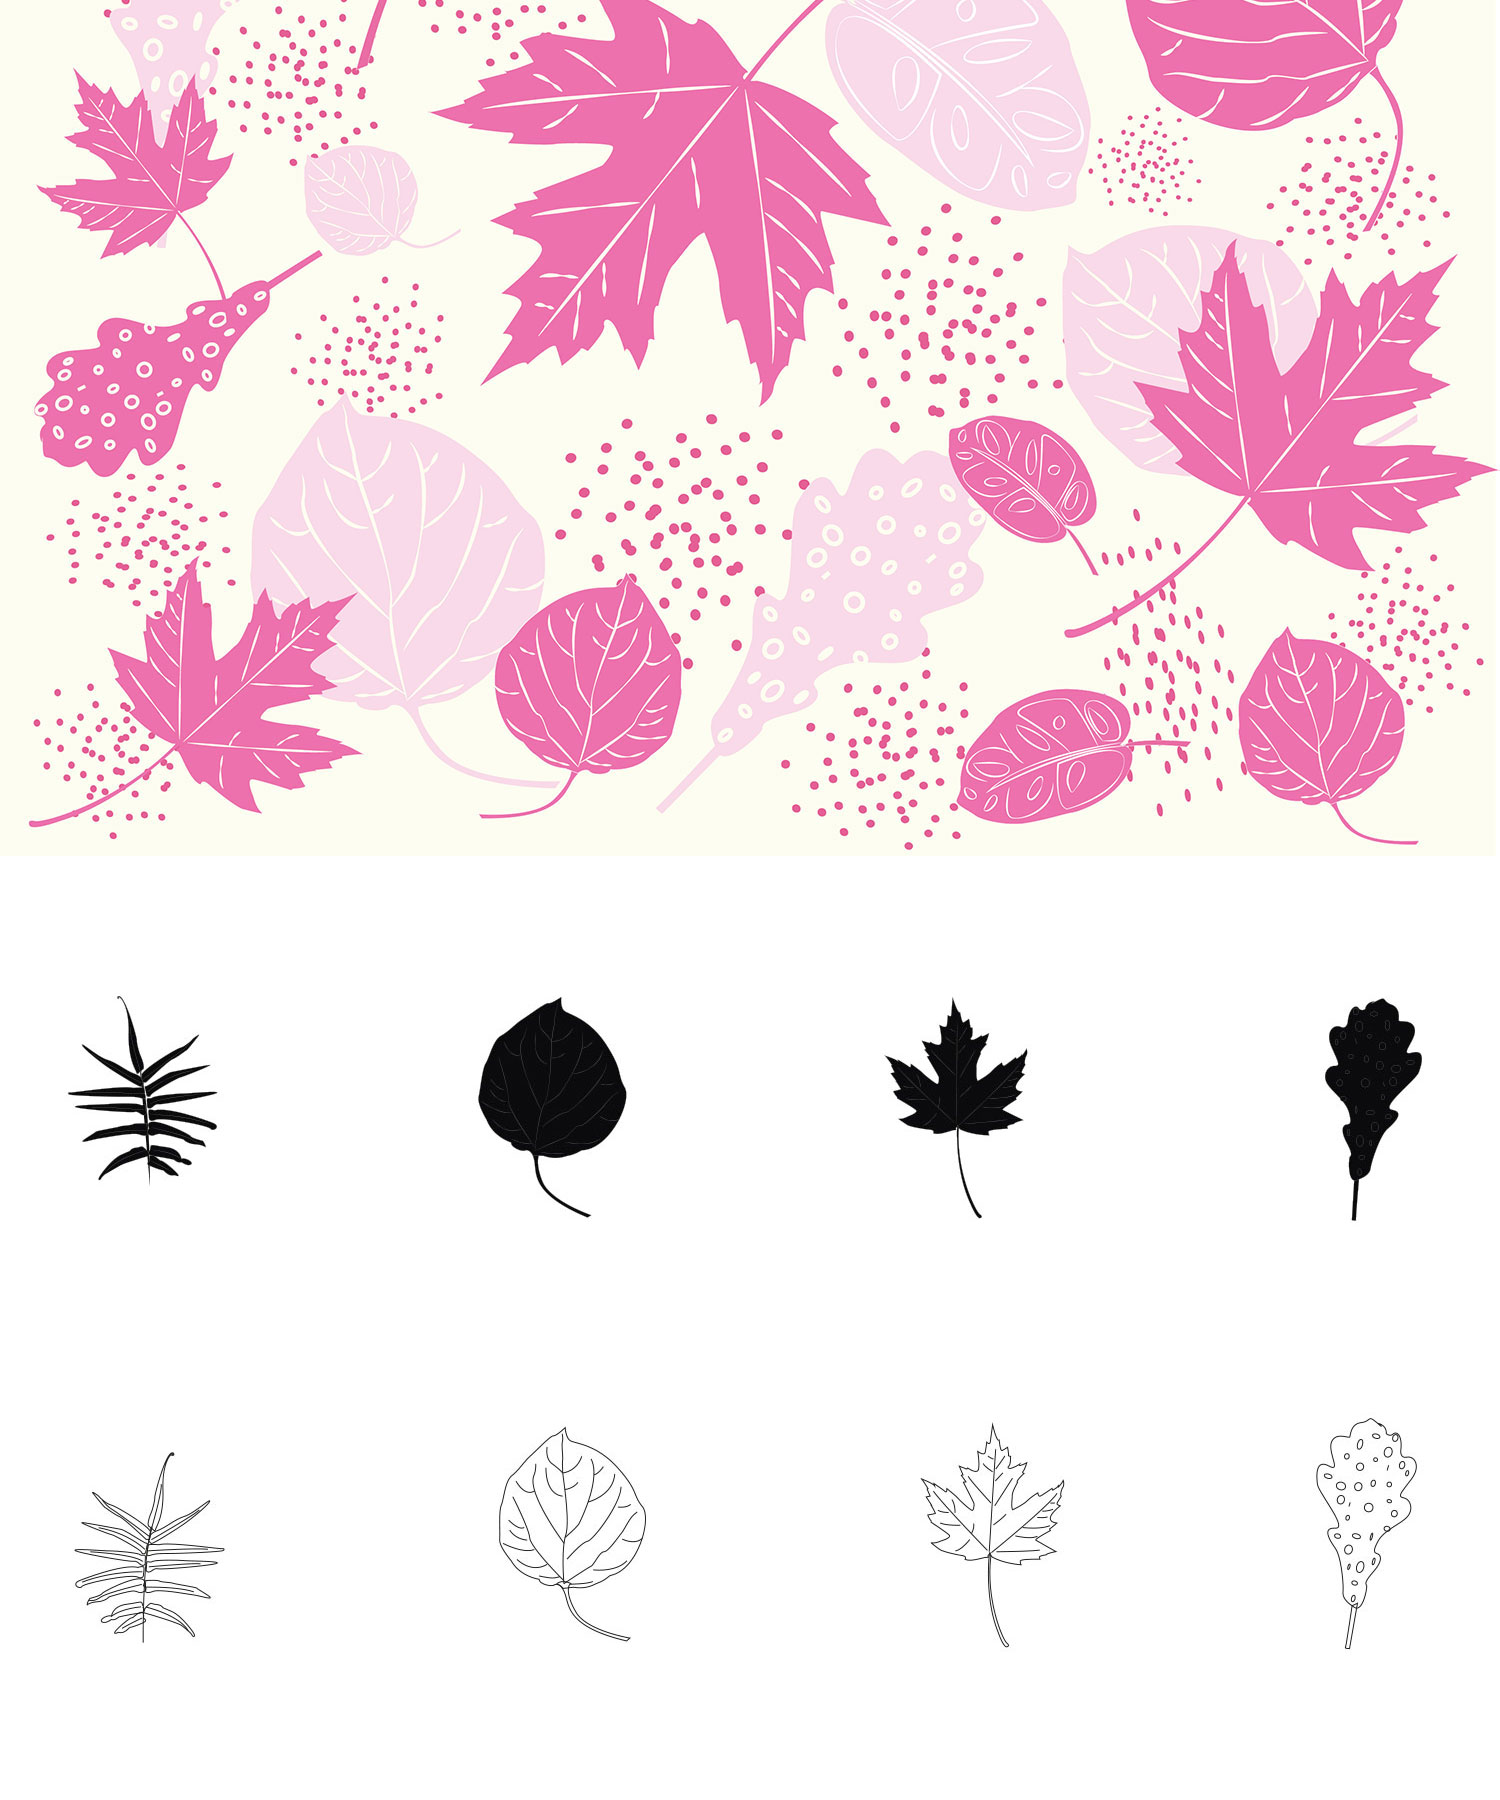 8 Adobe Illustrator leaf Brush Sets You Can Download For Free